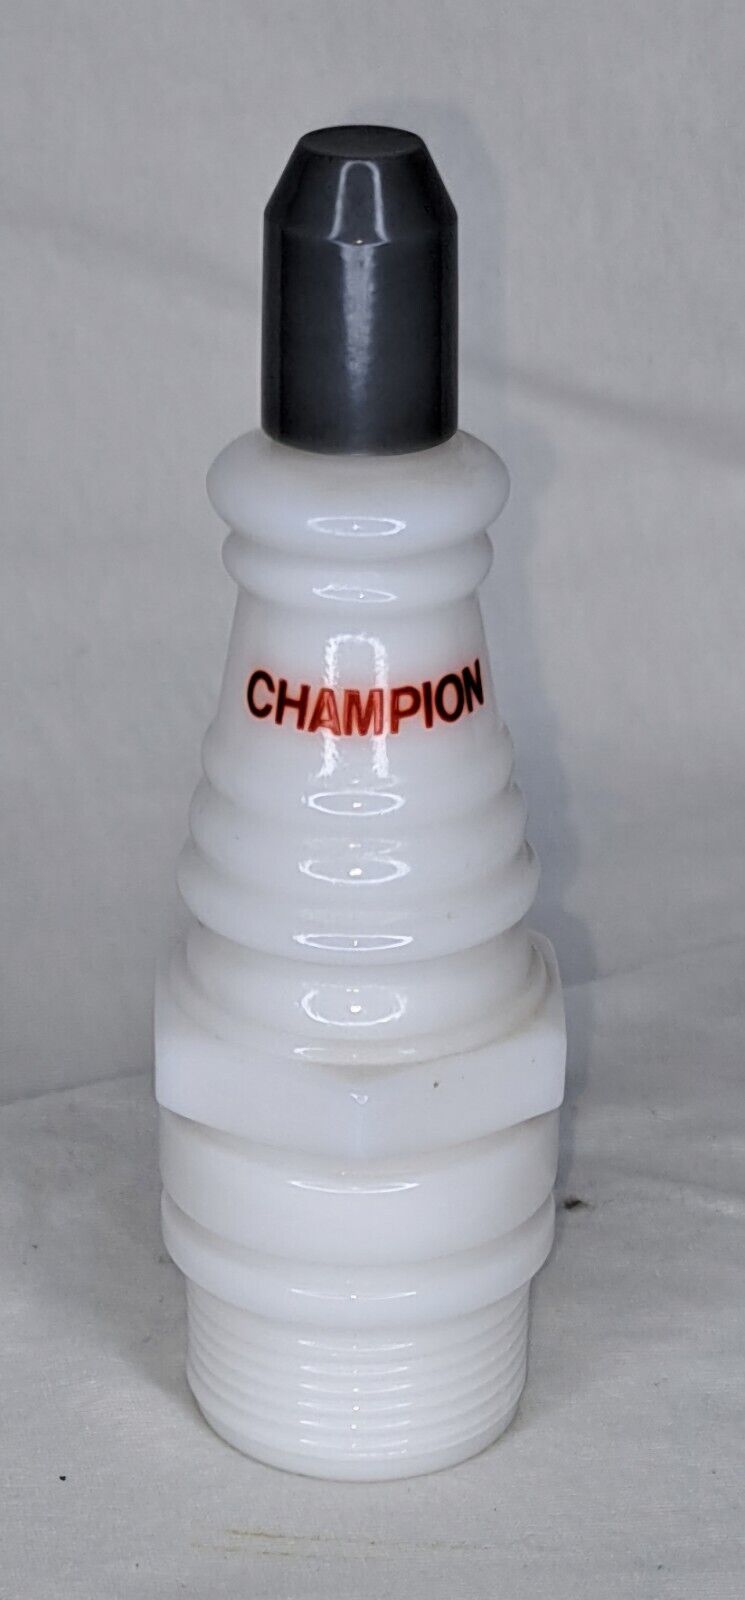 Vintage Avon Champion Spark Plug Cologne Decanter (Empty)